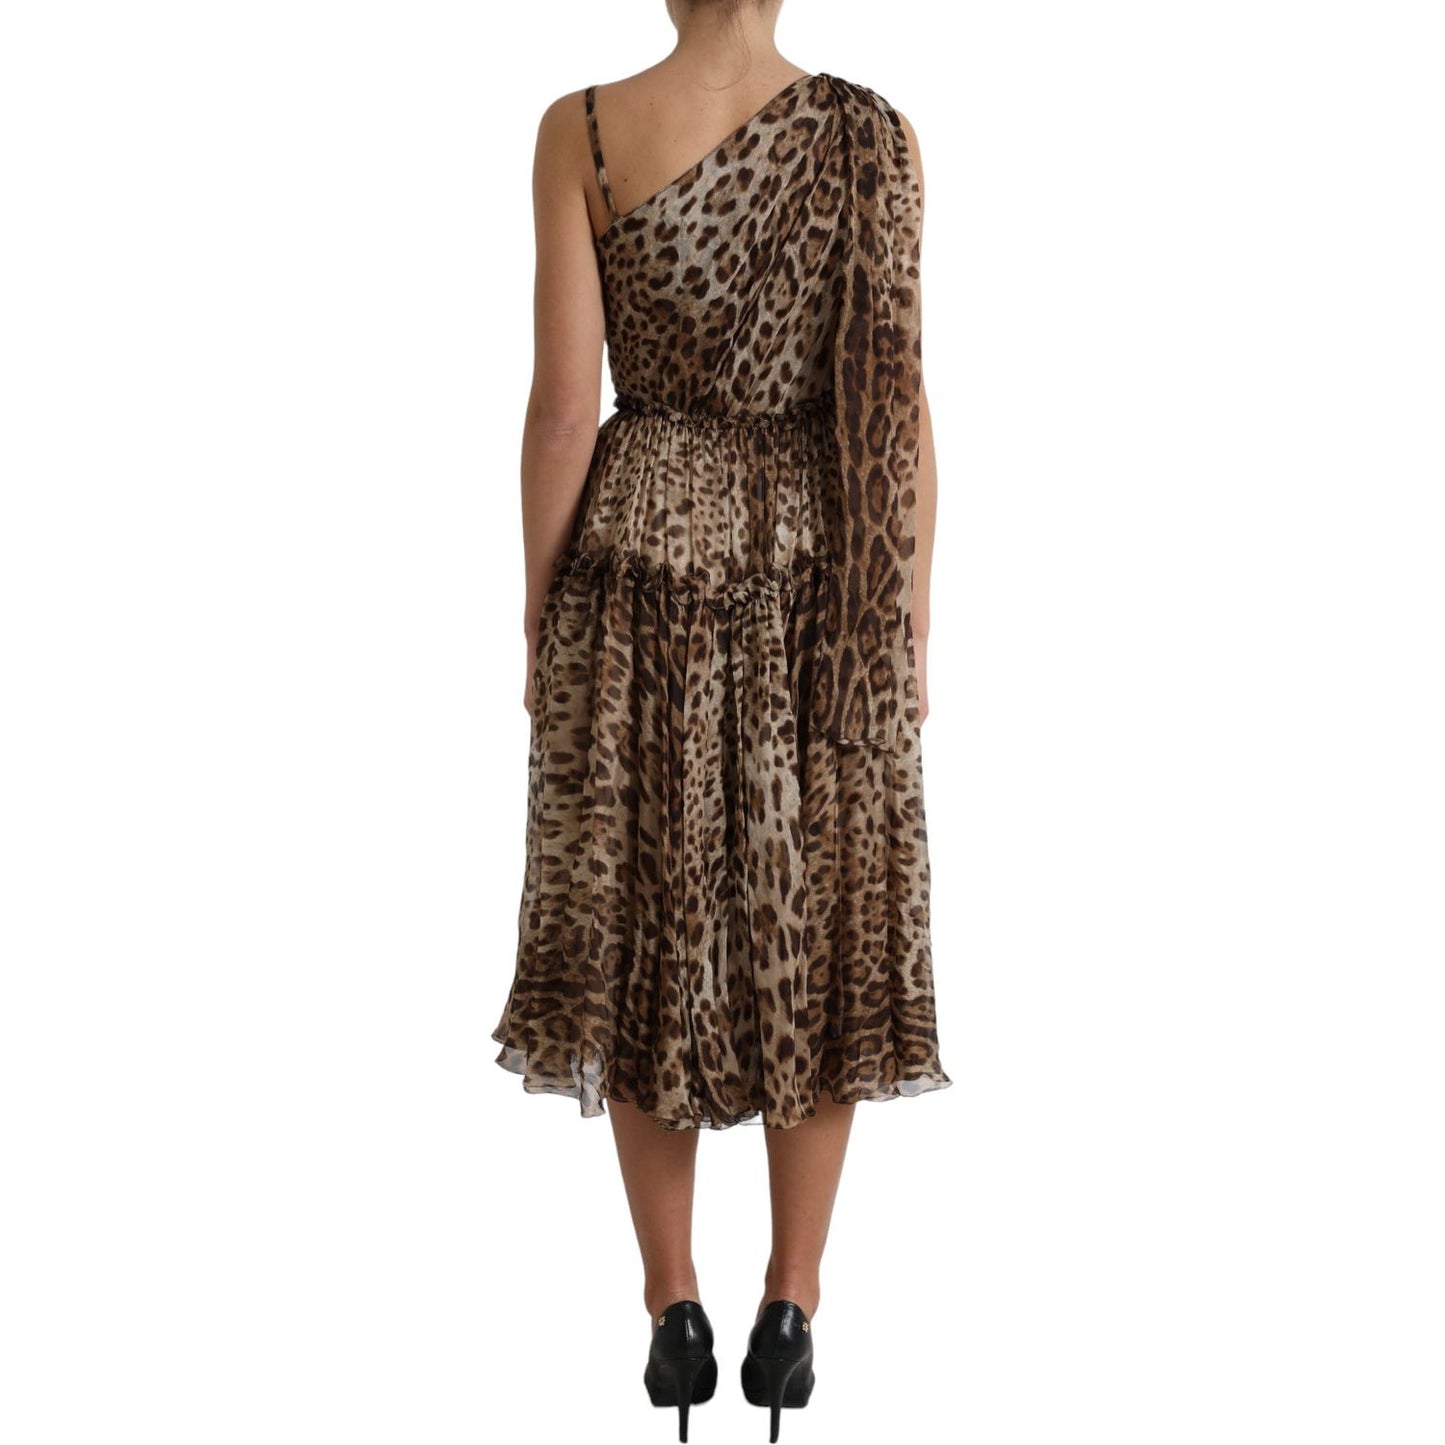 Dolce & Gabbana Elegant One-Shoulder Leopard Midi Dress brown-leopard-print-silk-ruffled-midi-dress